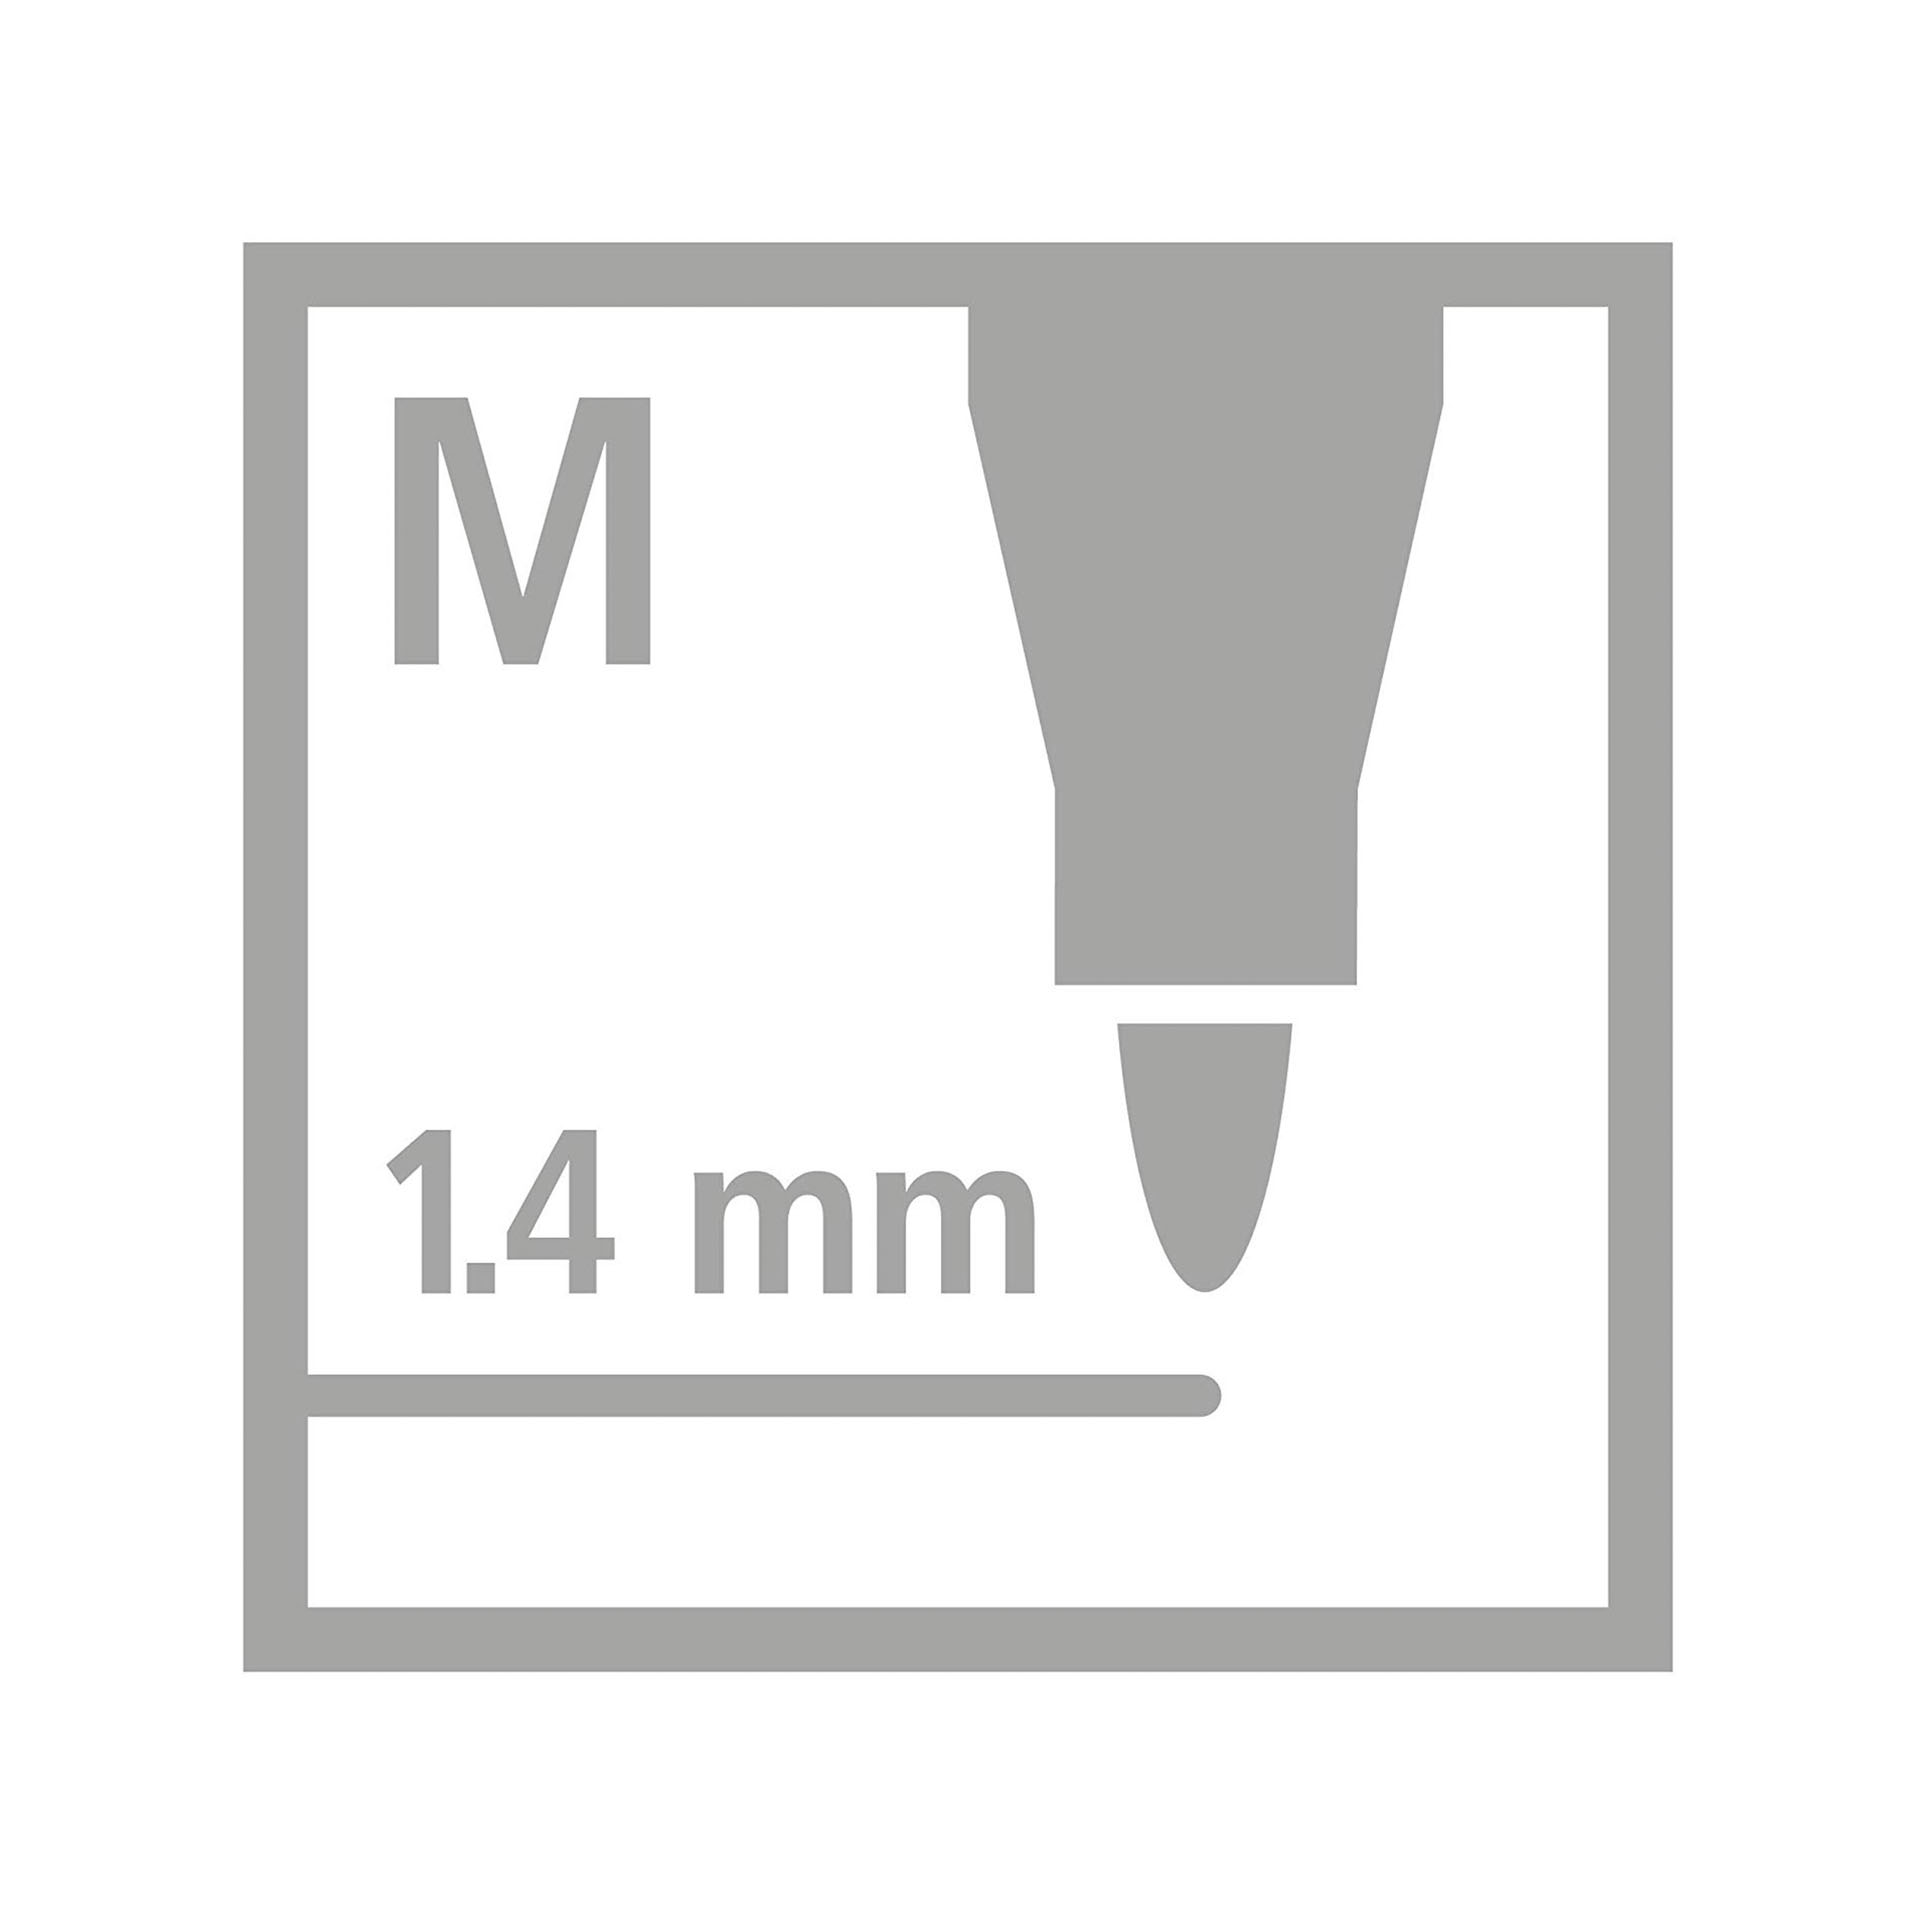 Pennarello Premium Metallizzato - Stabilo Pen 68 Metallic - Scatola In Metallo Da 8 - Con 8 Colori Assortiti, , large